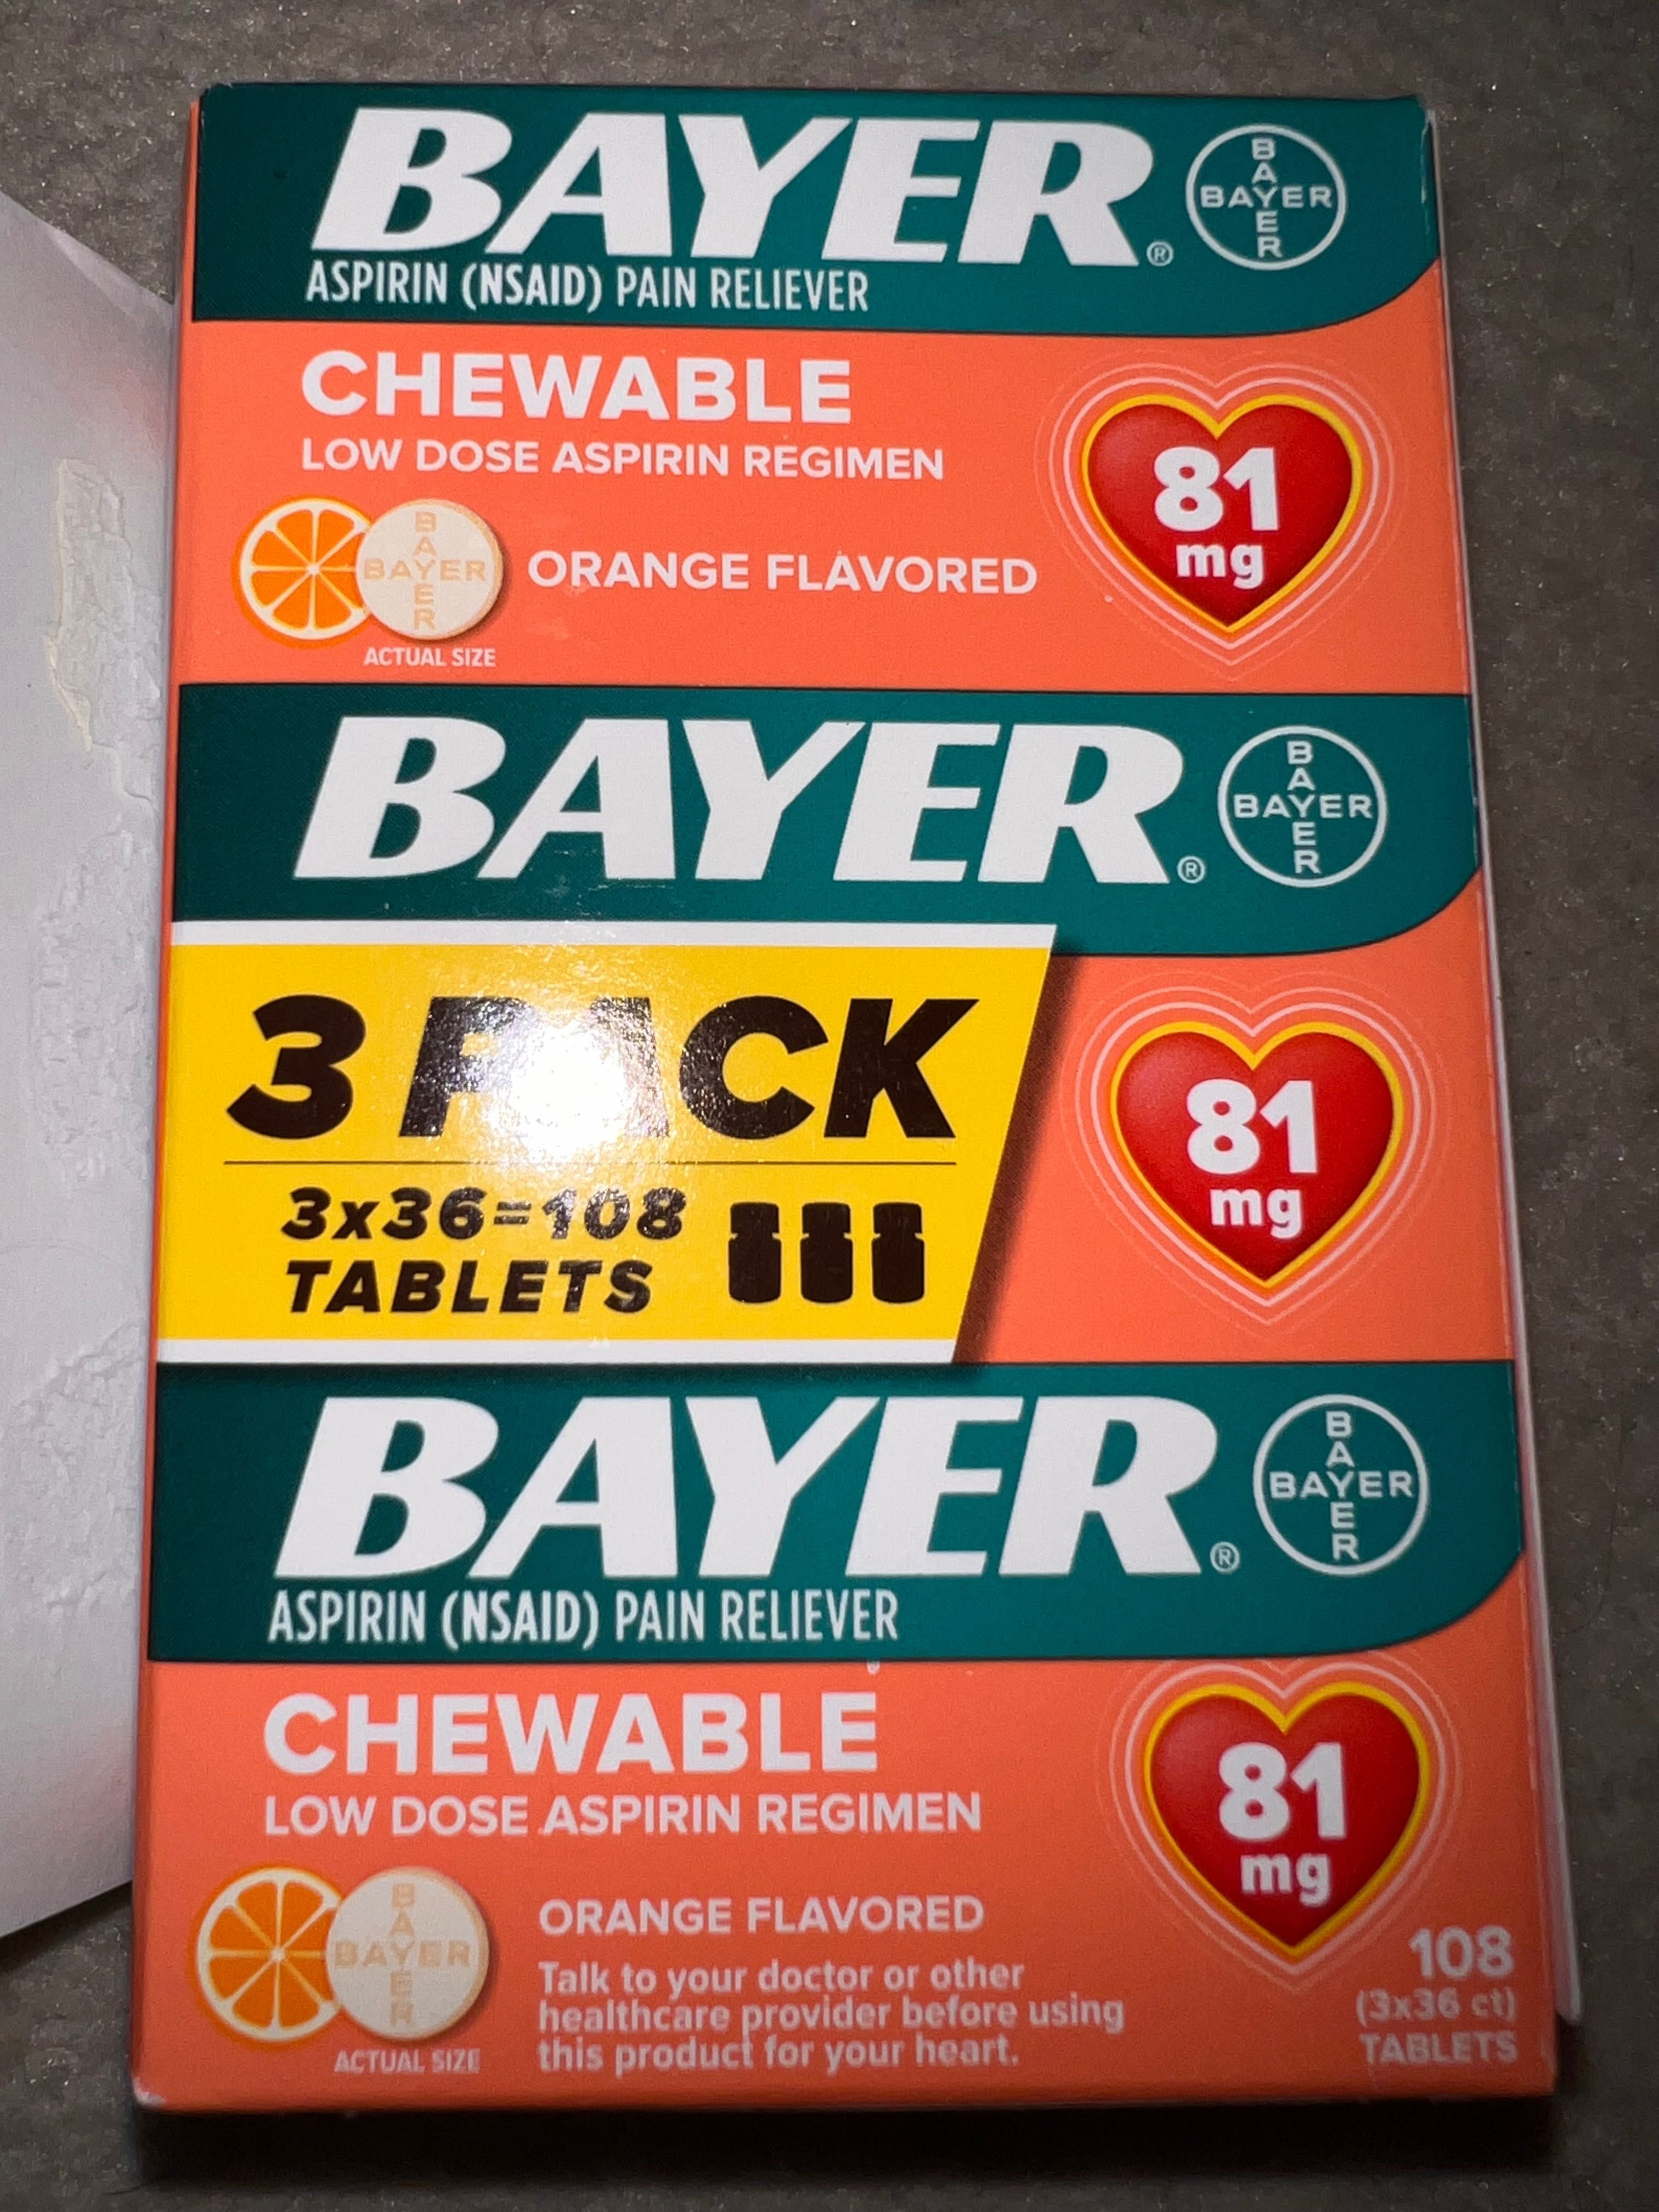 Oryginalny Bayer z USA - 3 pack o smaku pomarańczowym 108 szt.